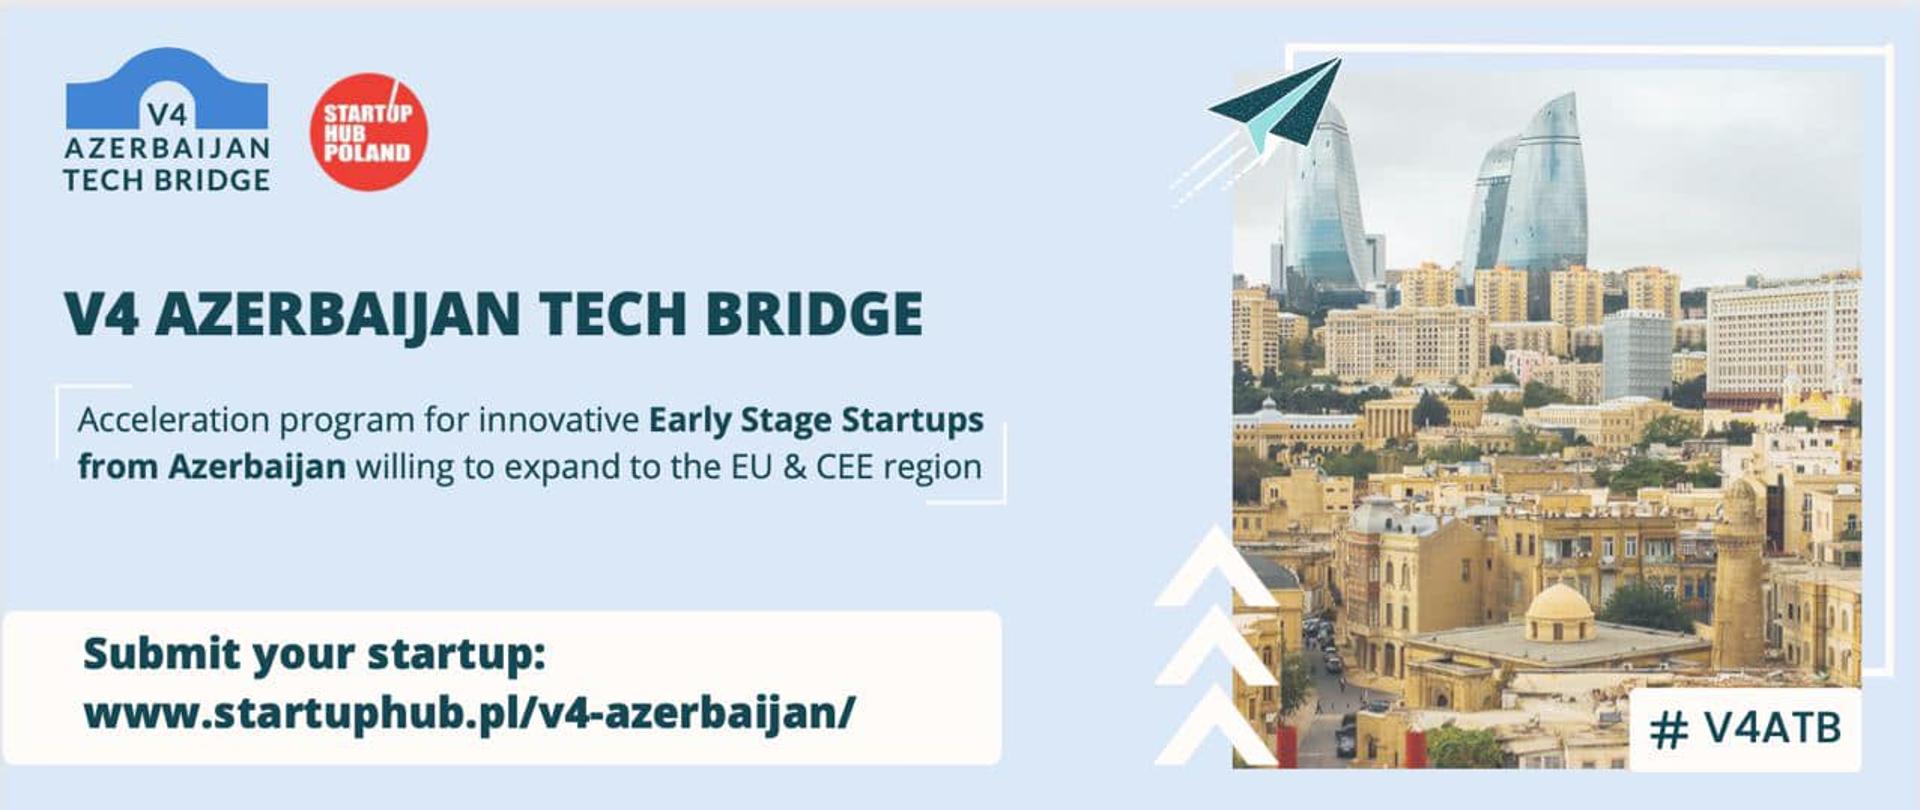 V4 Azerbaijan Tech Bridge